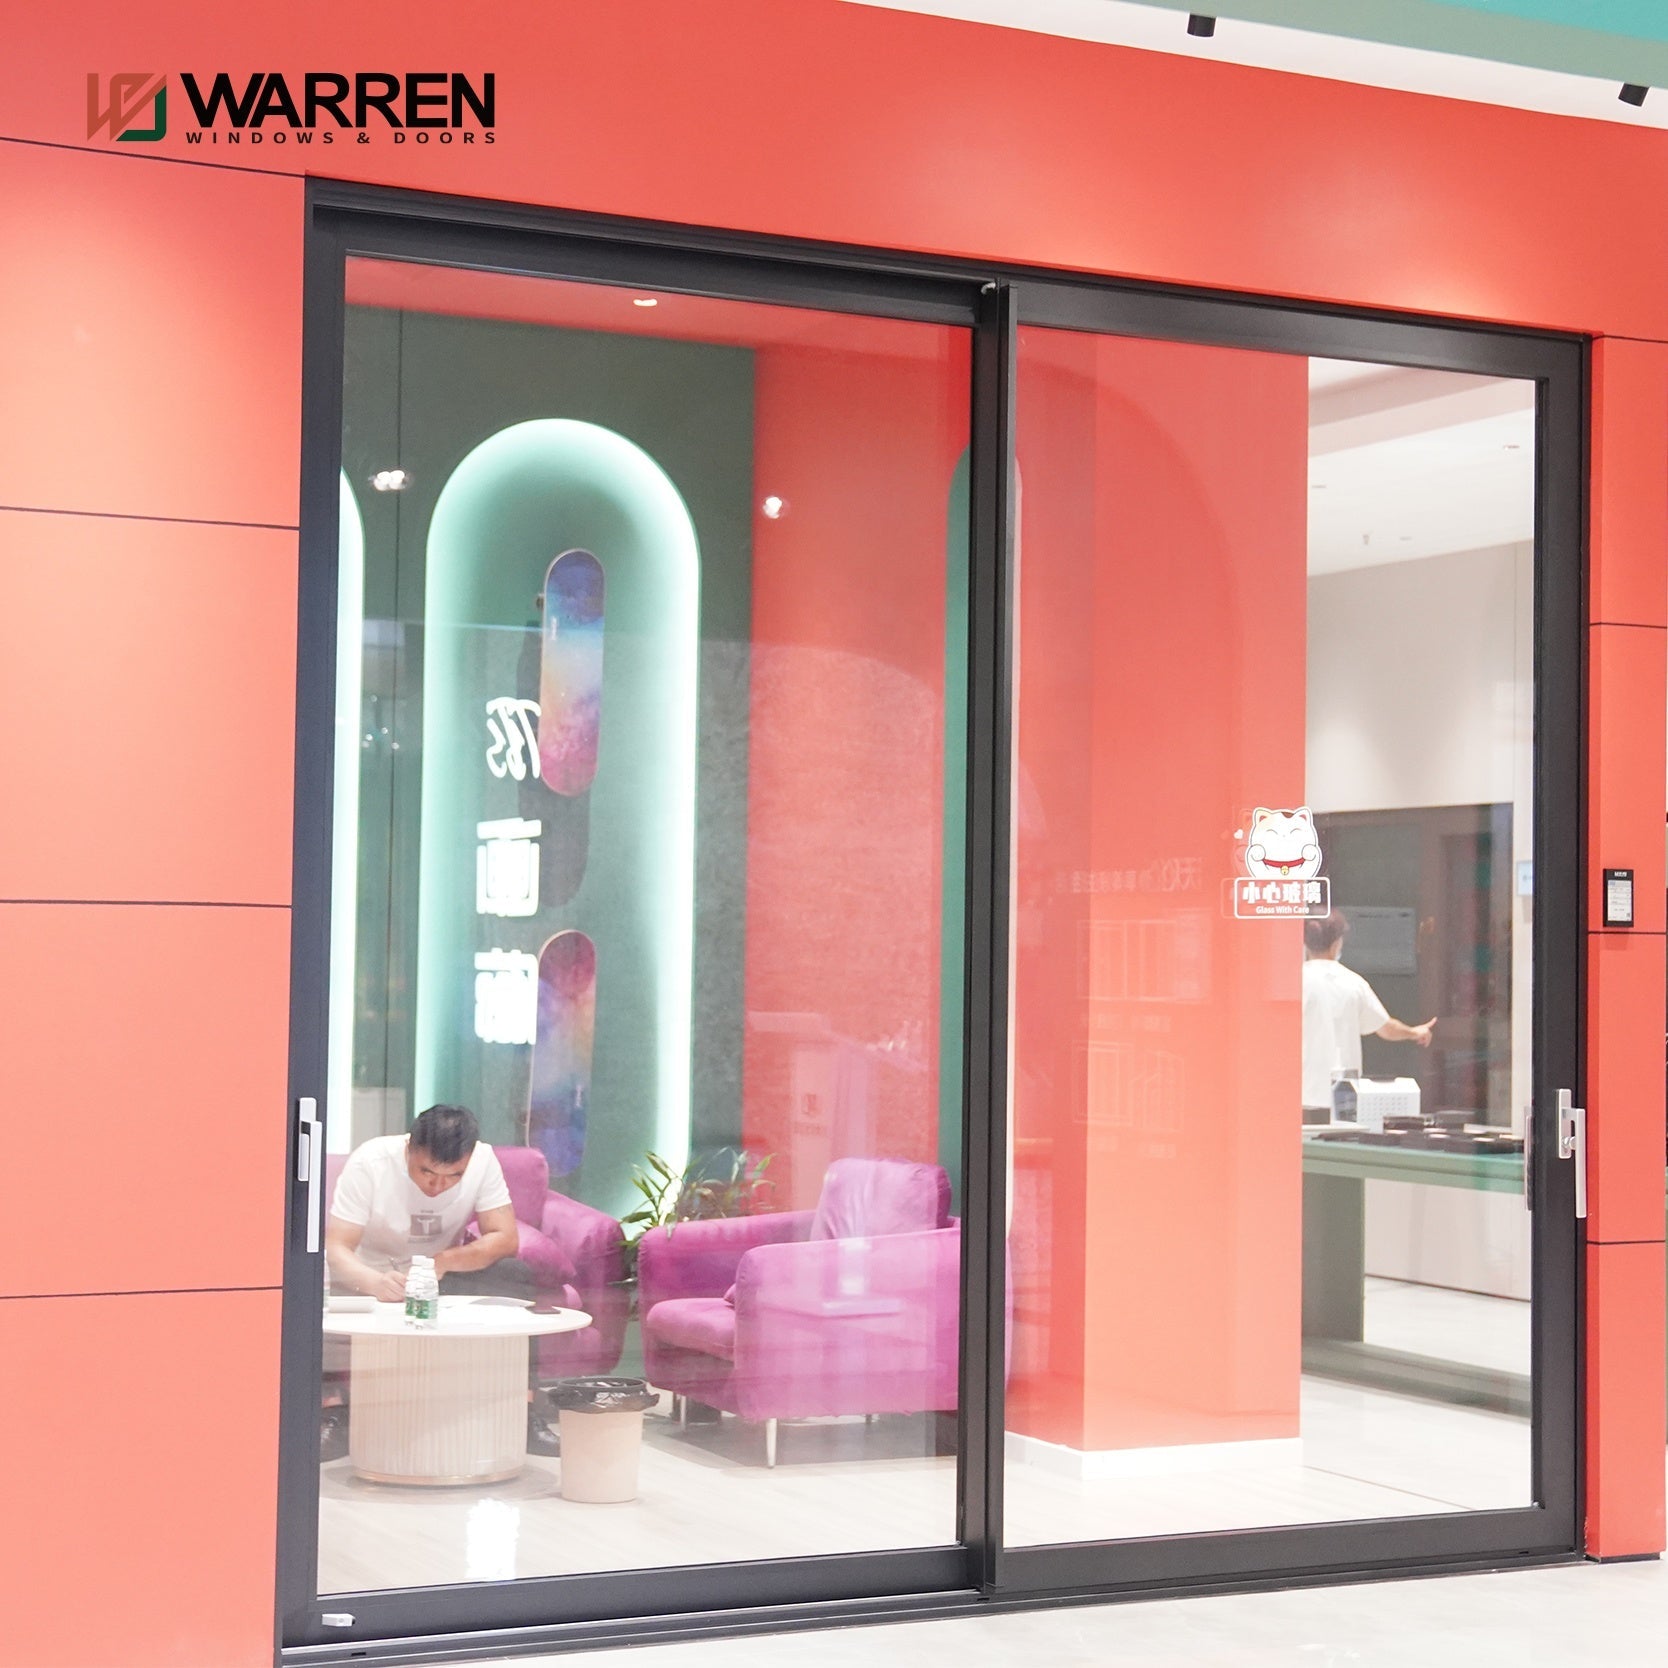 Warren 96Inch Patio Door NFRC Certifications Cheap Aluminum Heavy-duty Commercial Doors Soundproof Double Glazed Sliding Doors